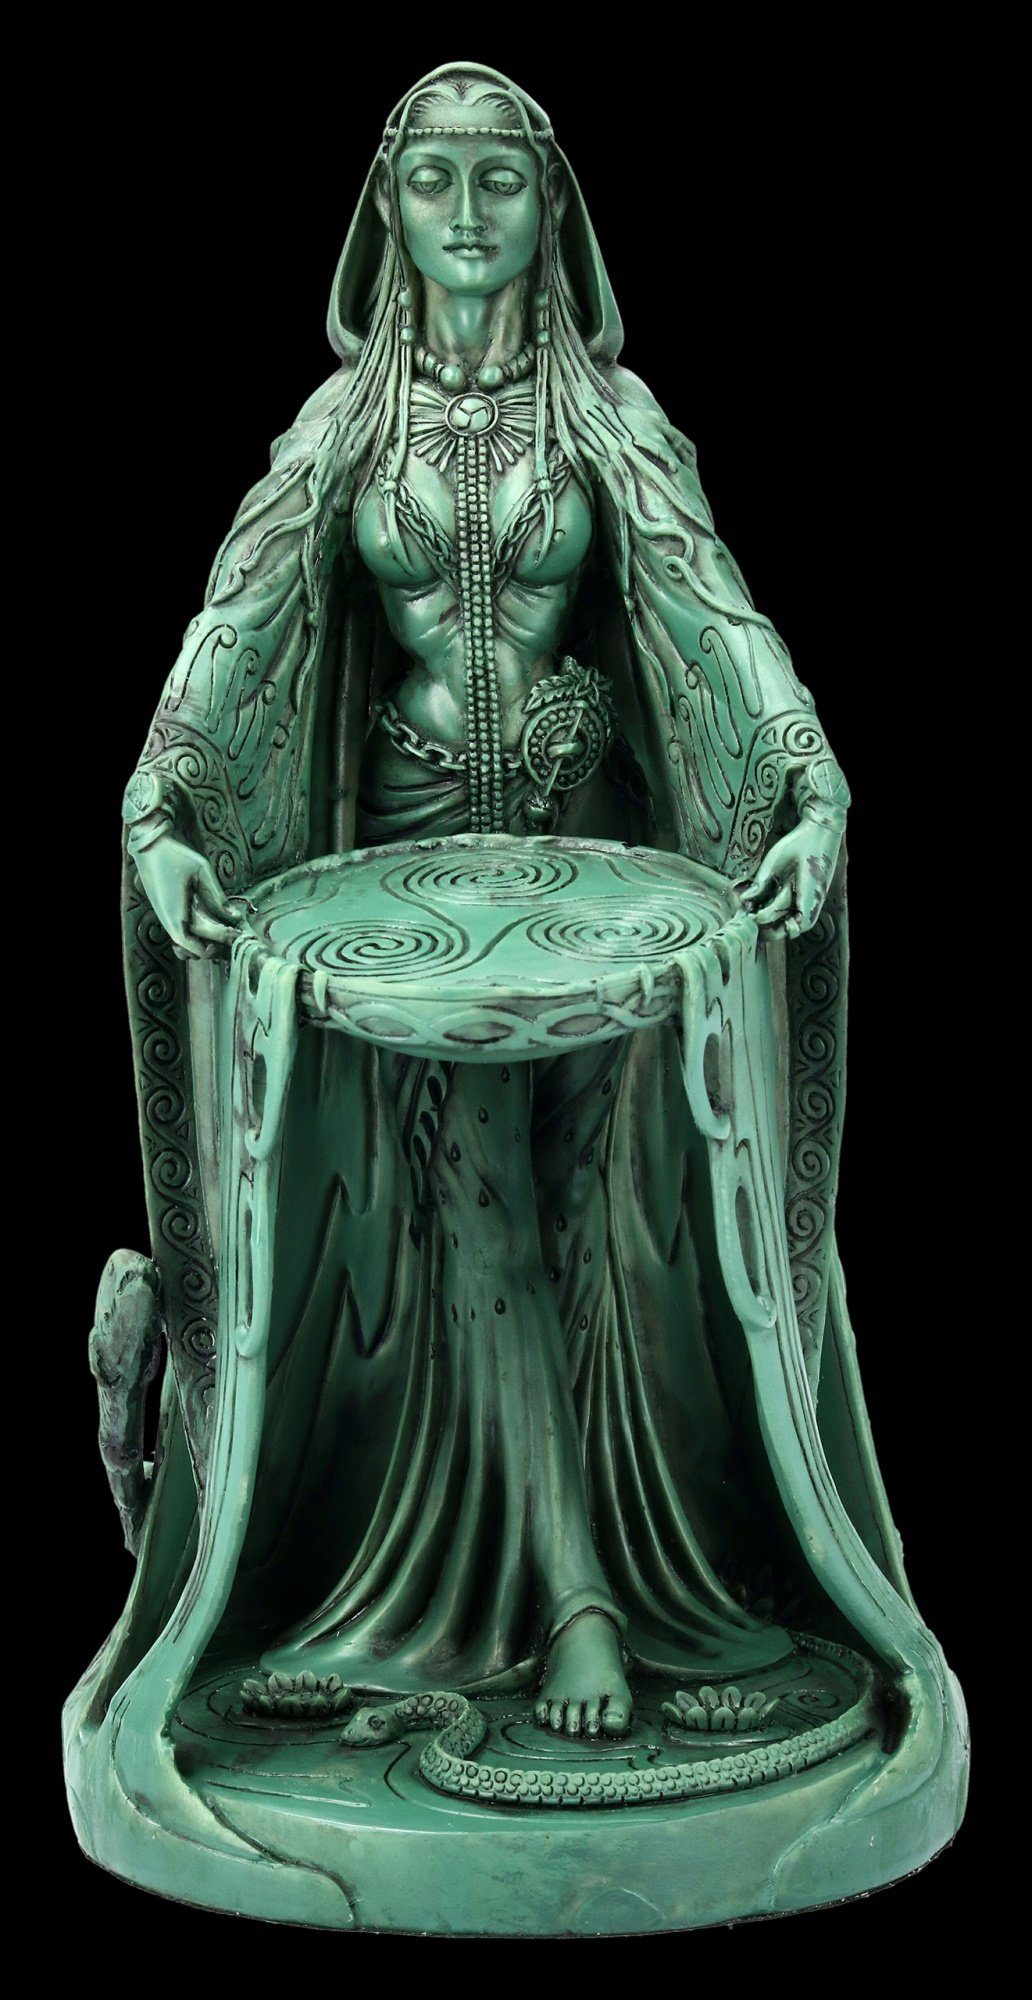 Danu Figur Keltische Göttin Mutter Wicca Maxine Miller bronziert 